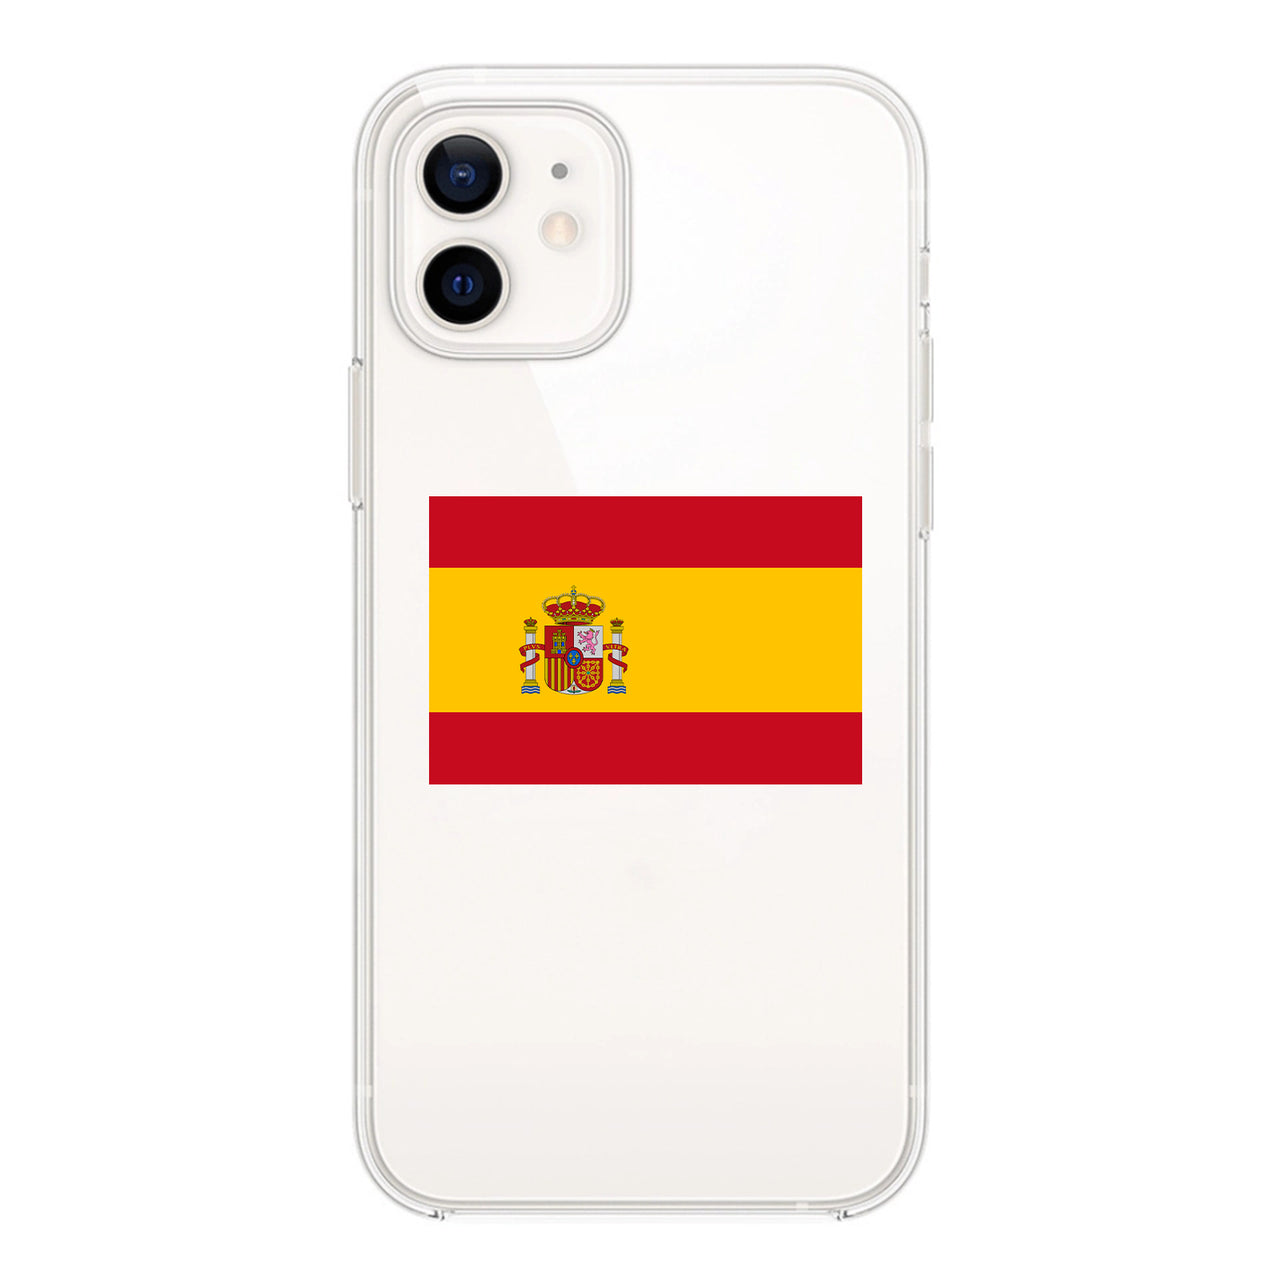 Spain Designed Transparent Silicone iPhone Cases